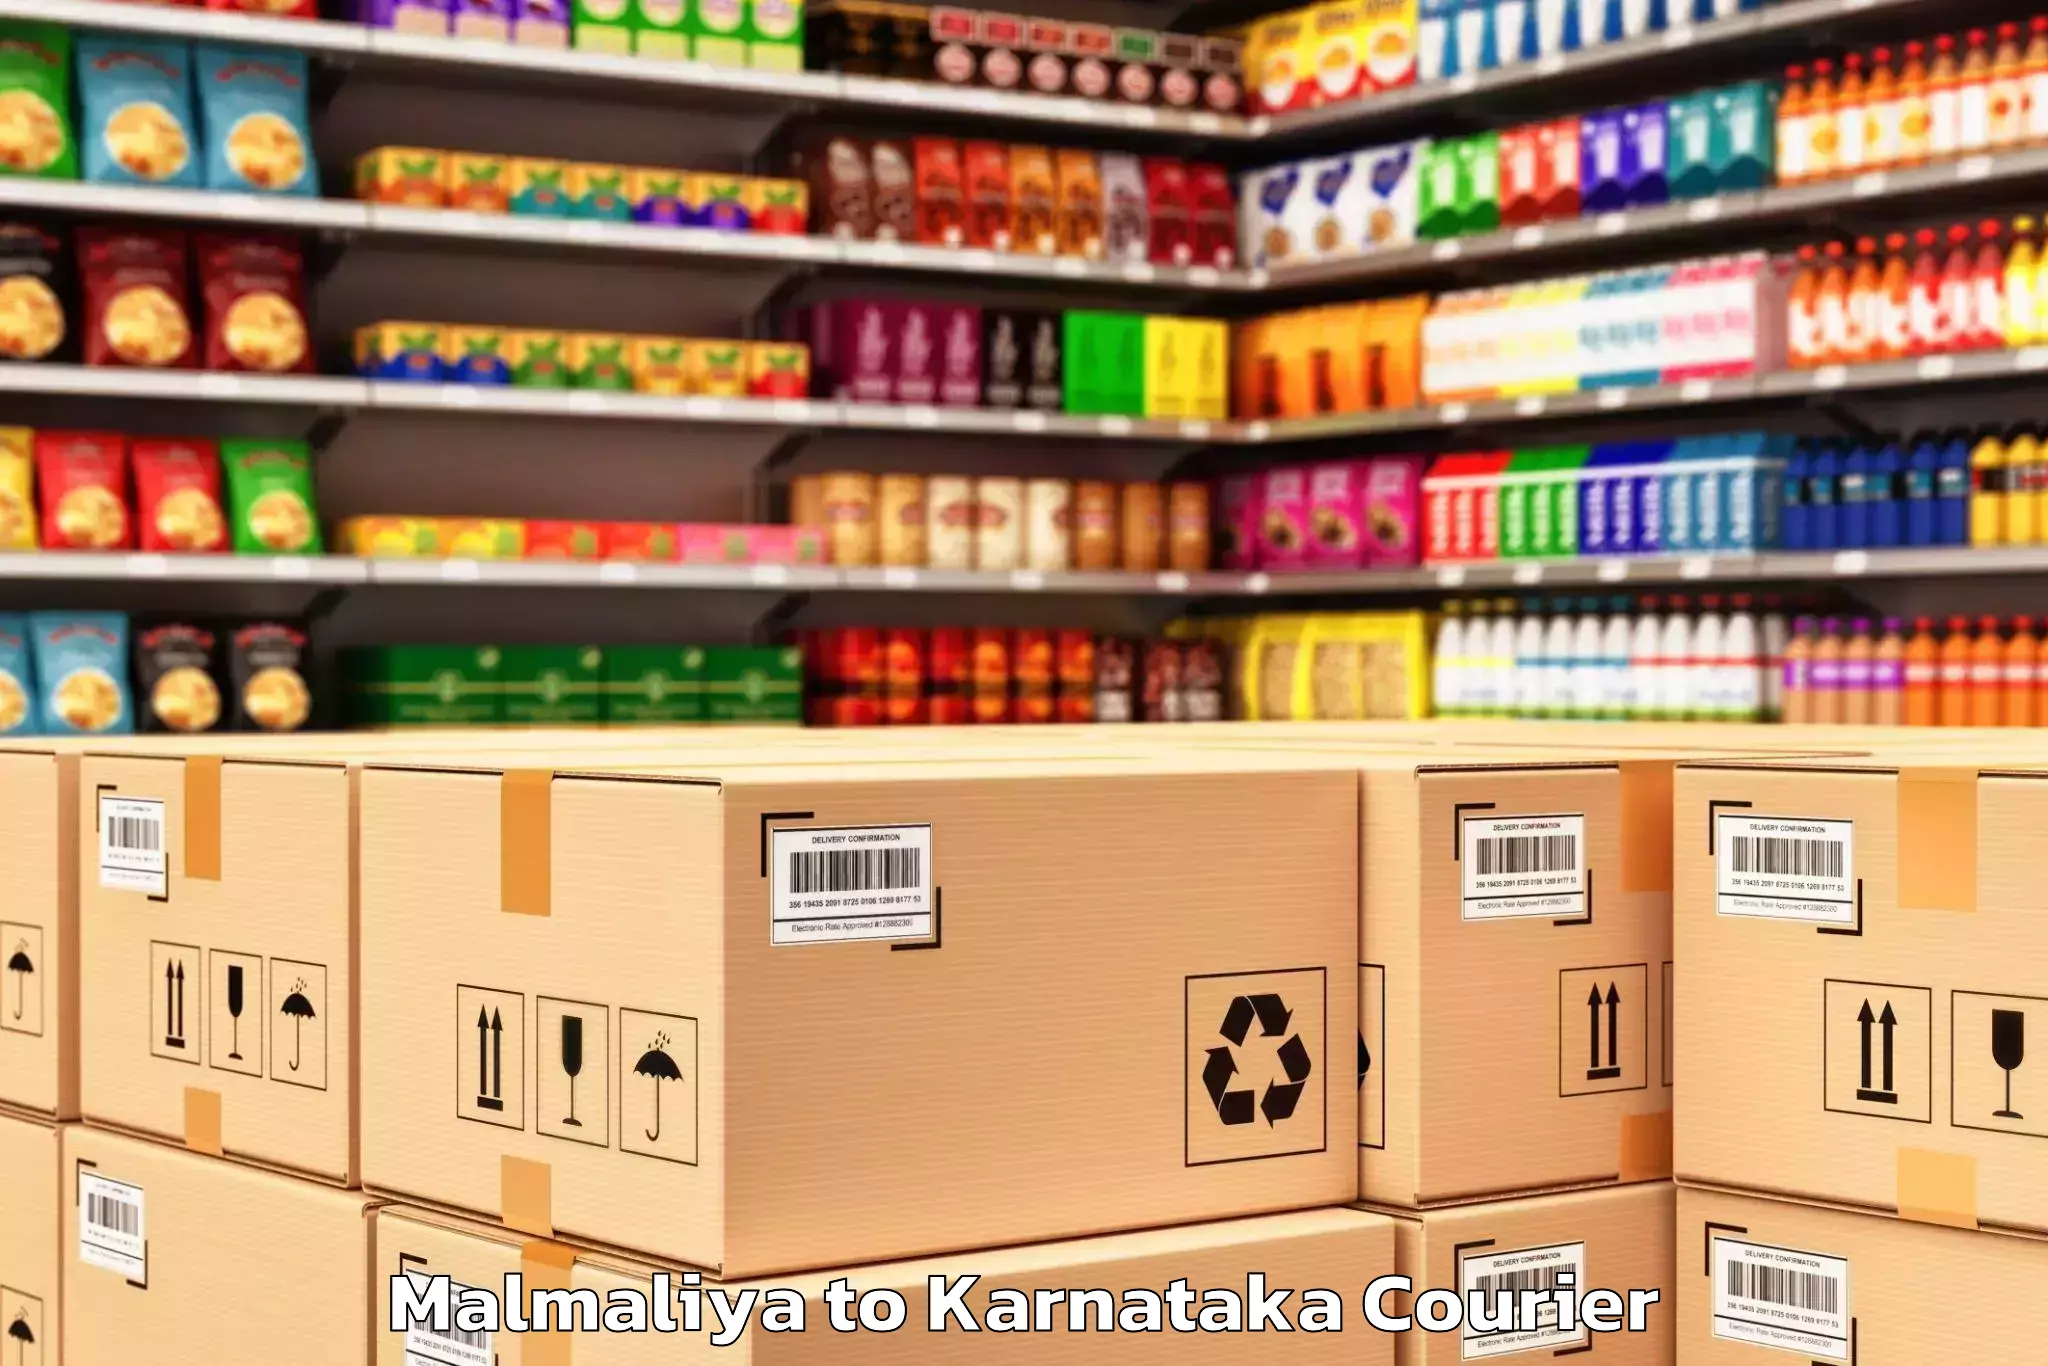 Professional packing services Malmaliya to Karnataka